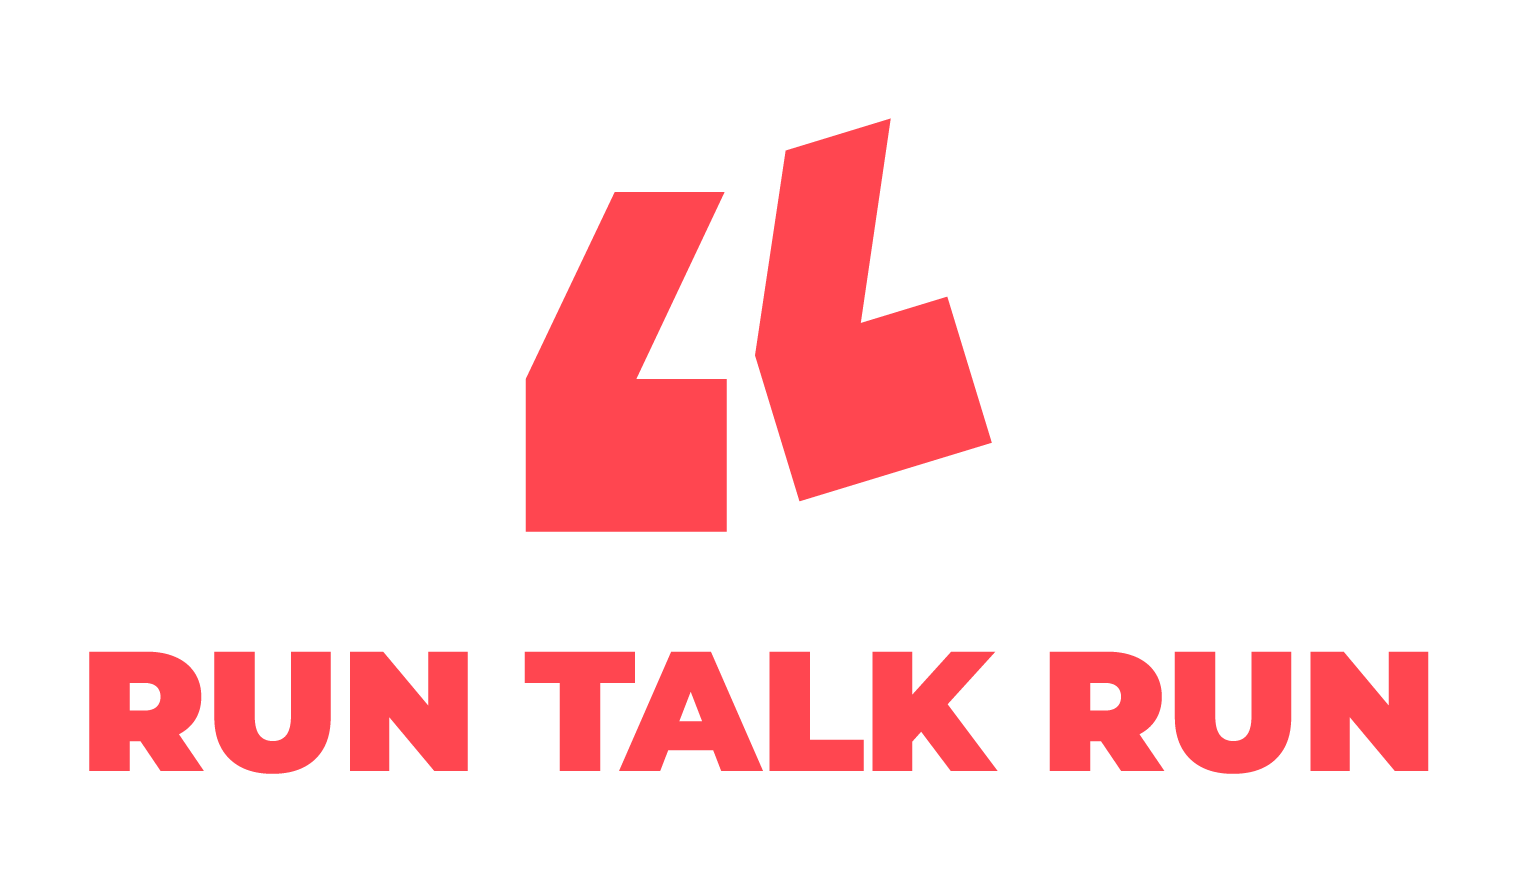 RUN TALK RUN